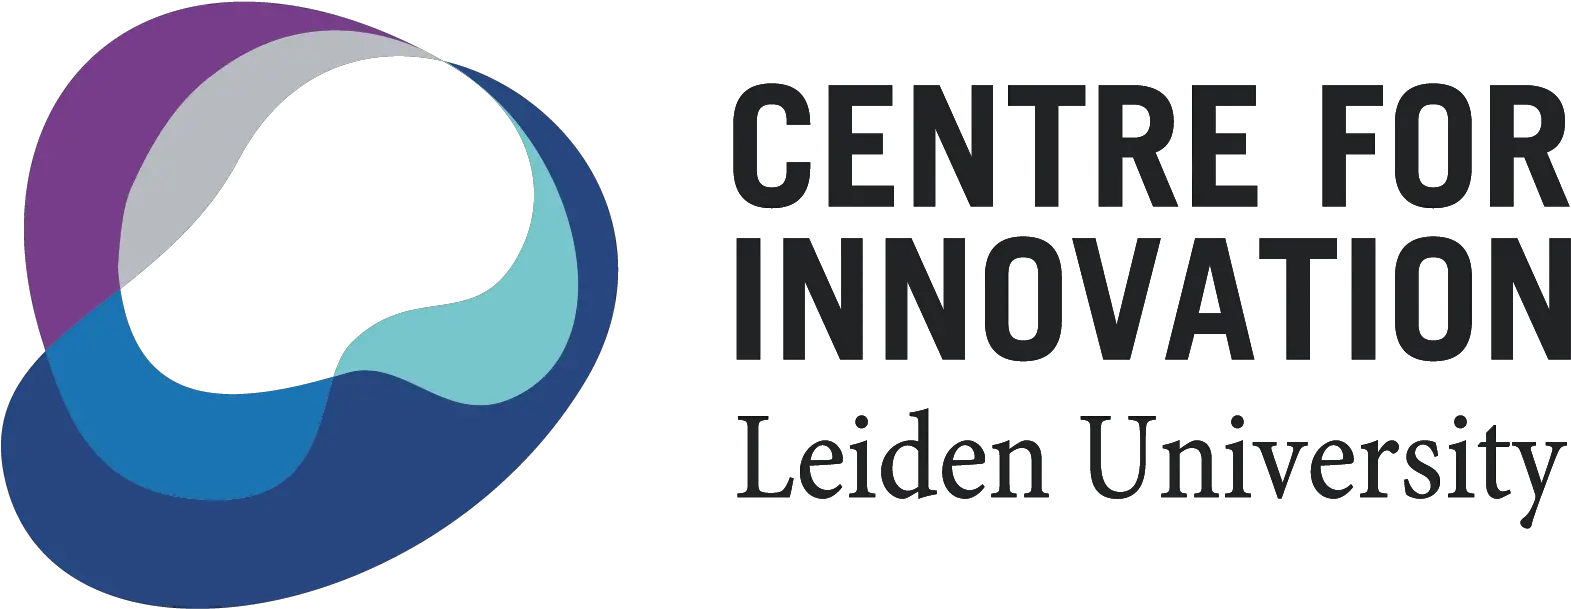 Plnt Leiden Centre For Innovation And Entrepreneurship Consortium For Street Children Png Vixx Logo